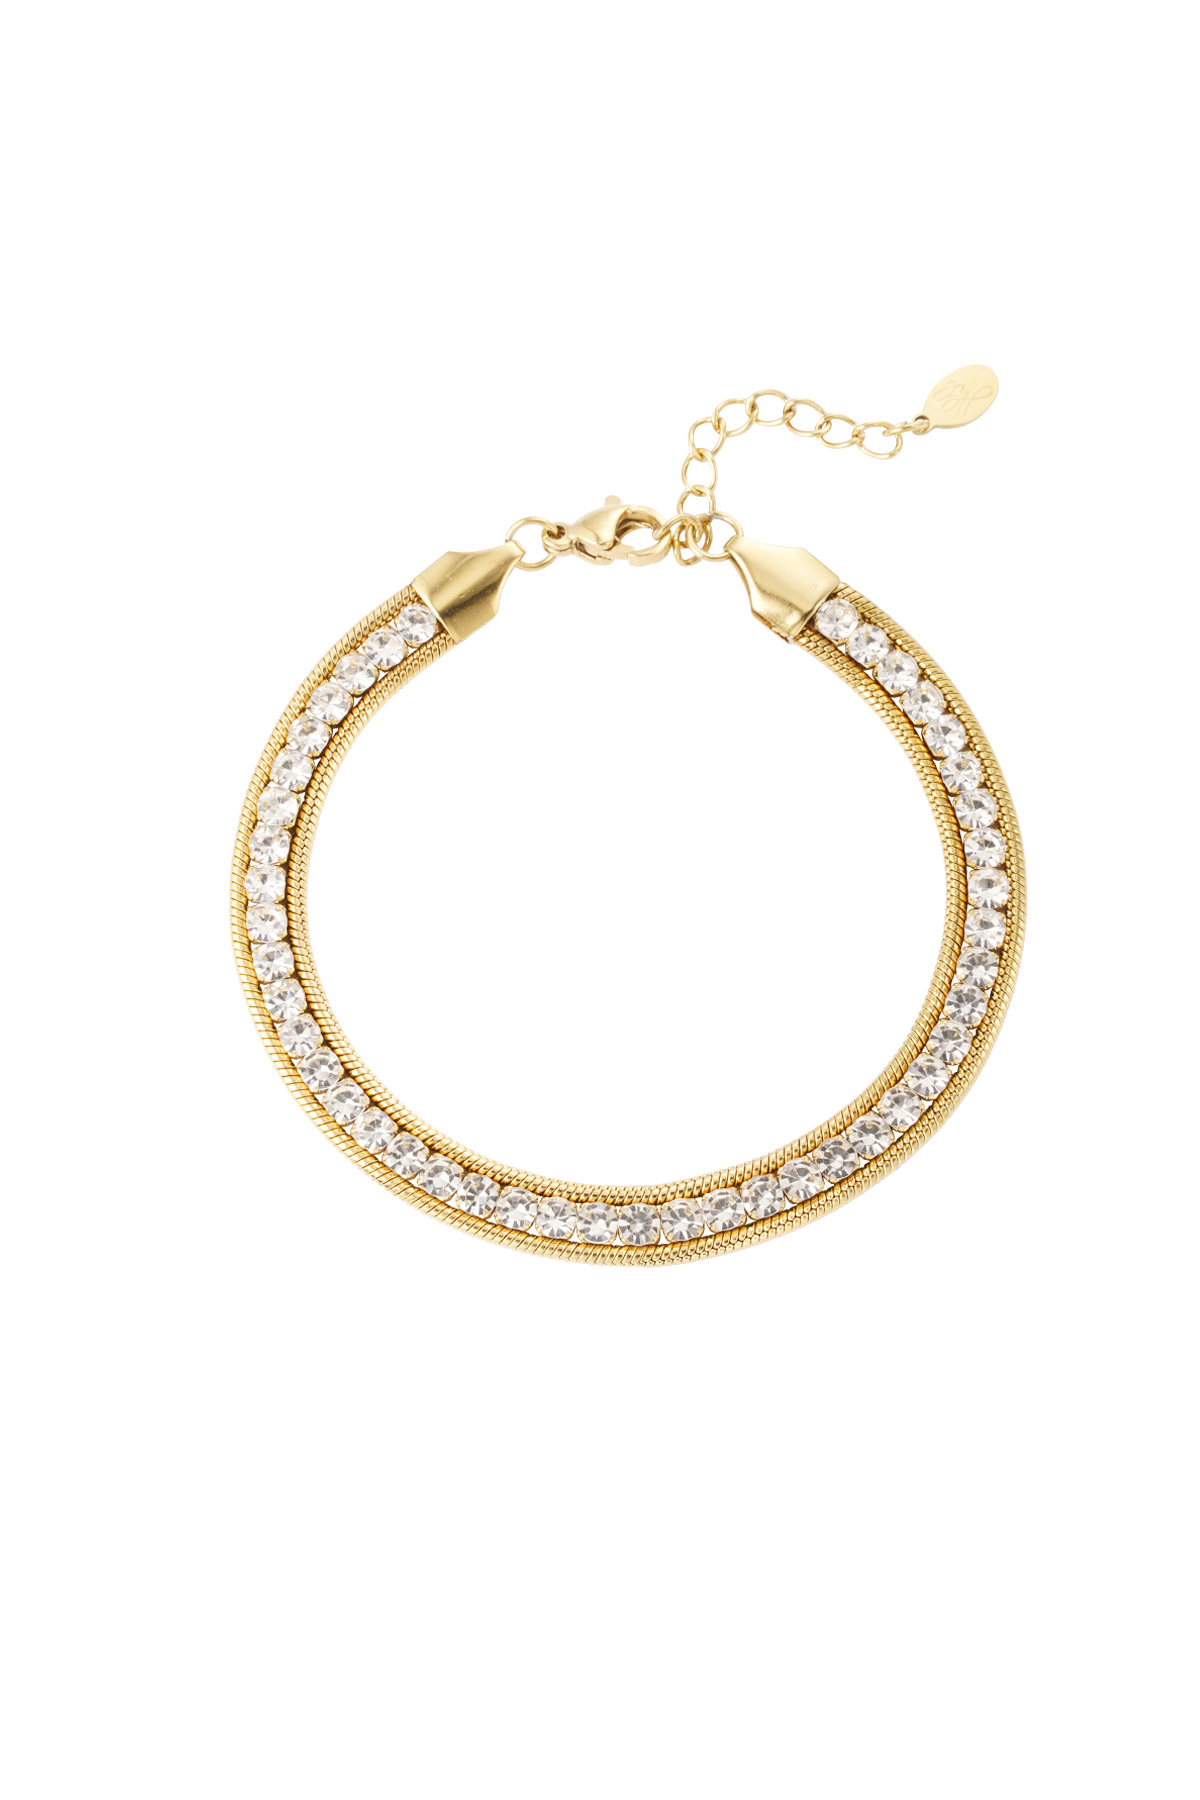 Bling bracelet - gold h5 